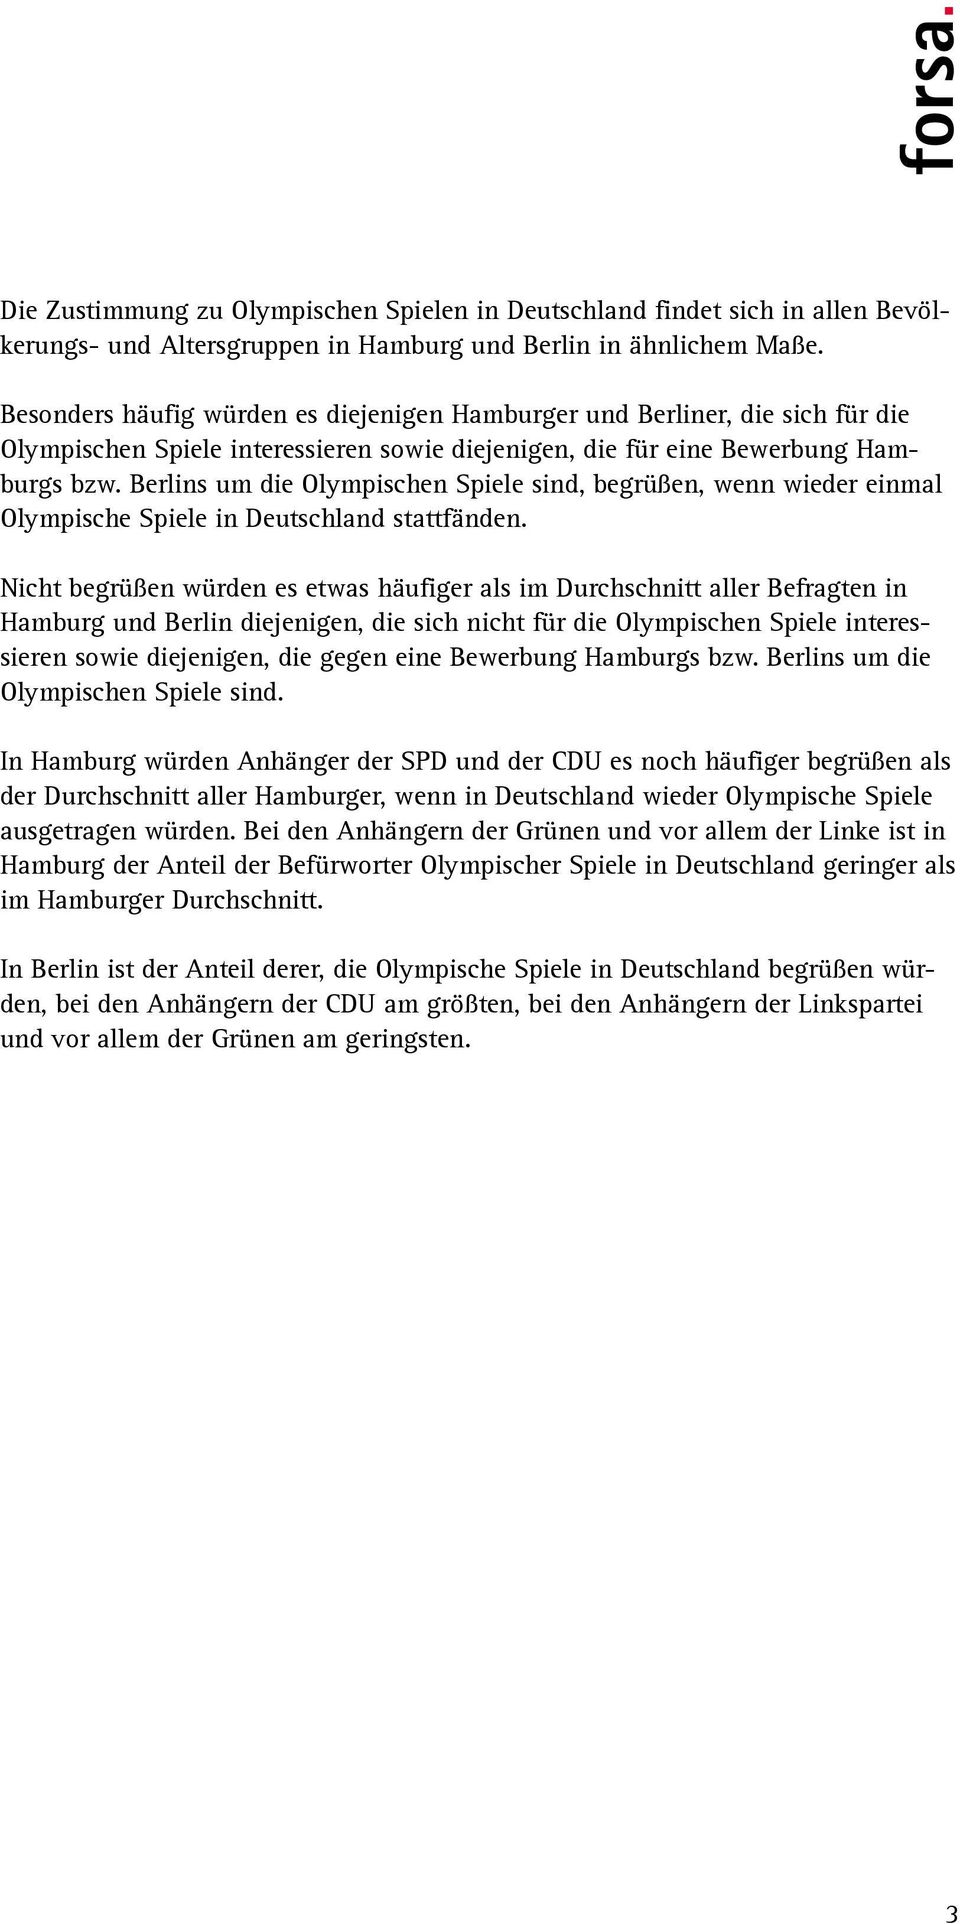 Berlins um die Olympischen Spiele sind, begrüßen, wenn wieder einmal Olympische Spiele in Deutschland stattfänden.